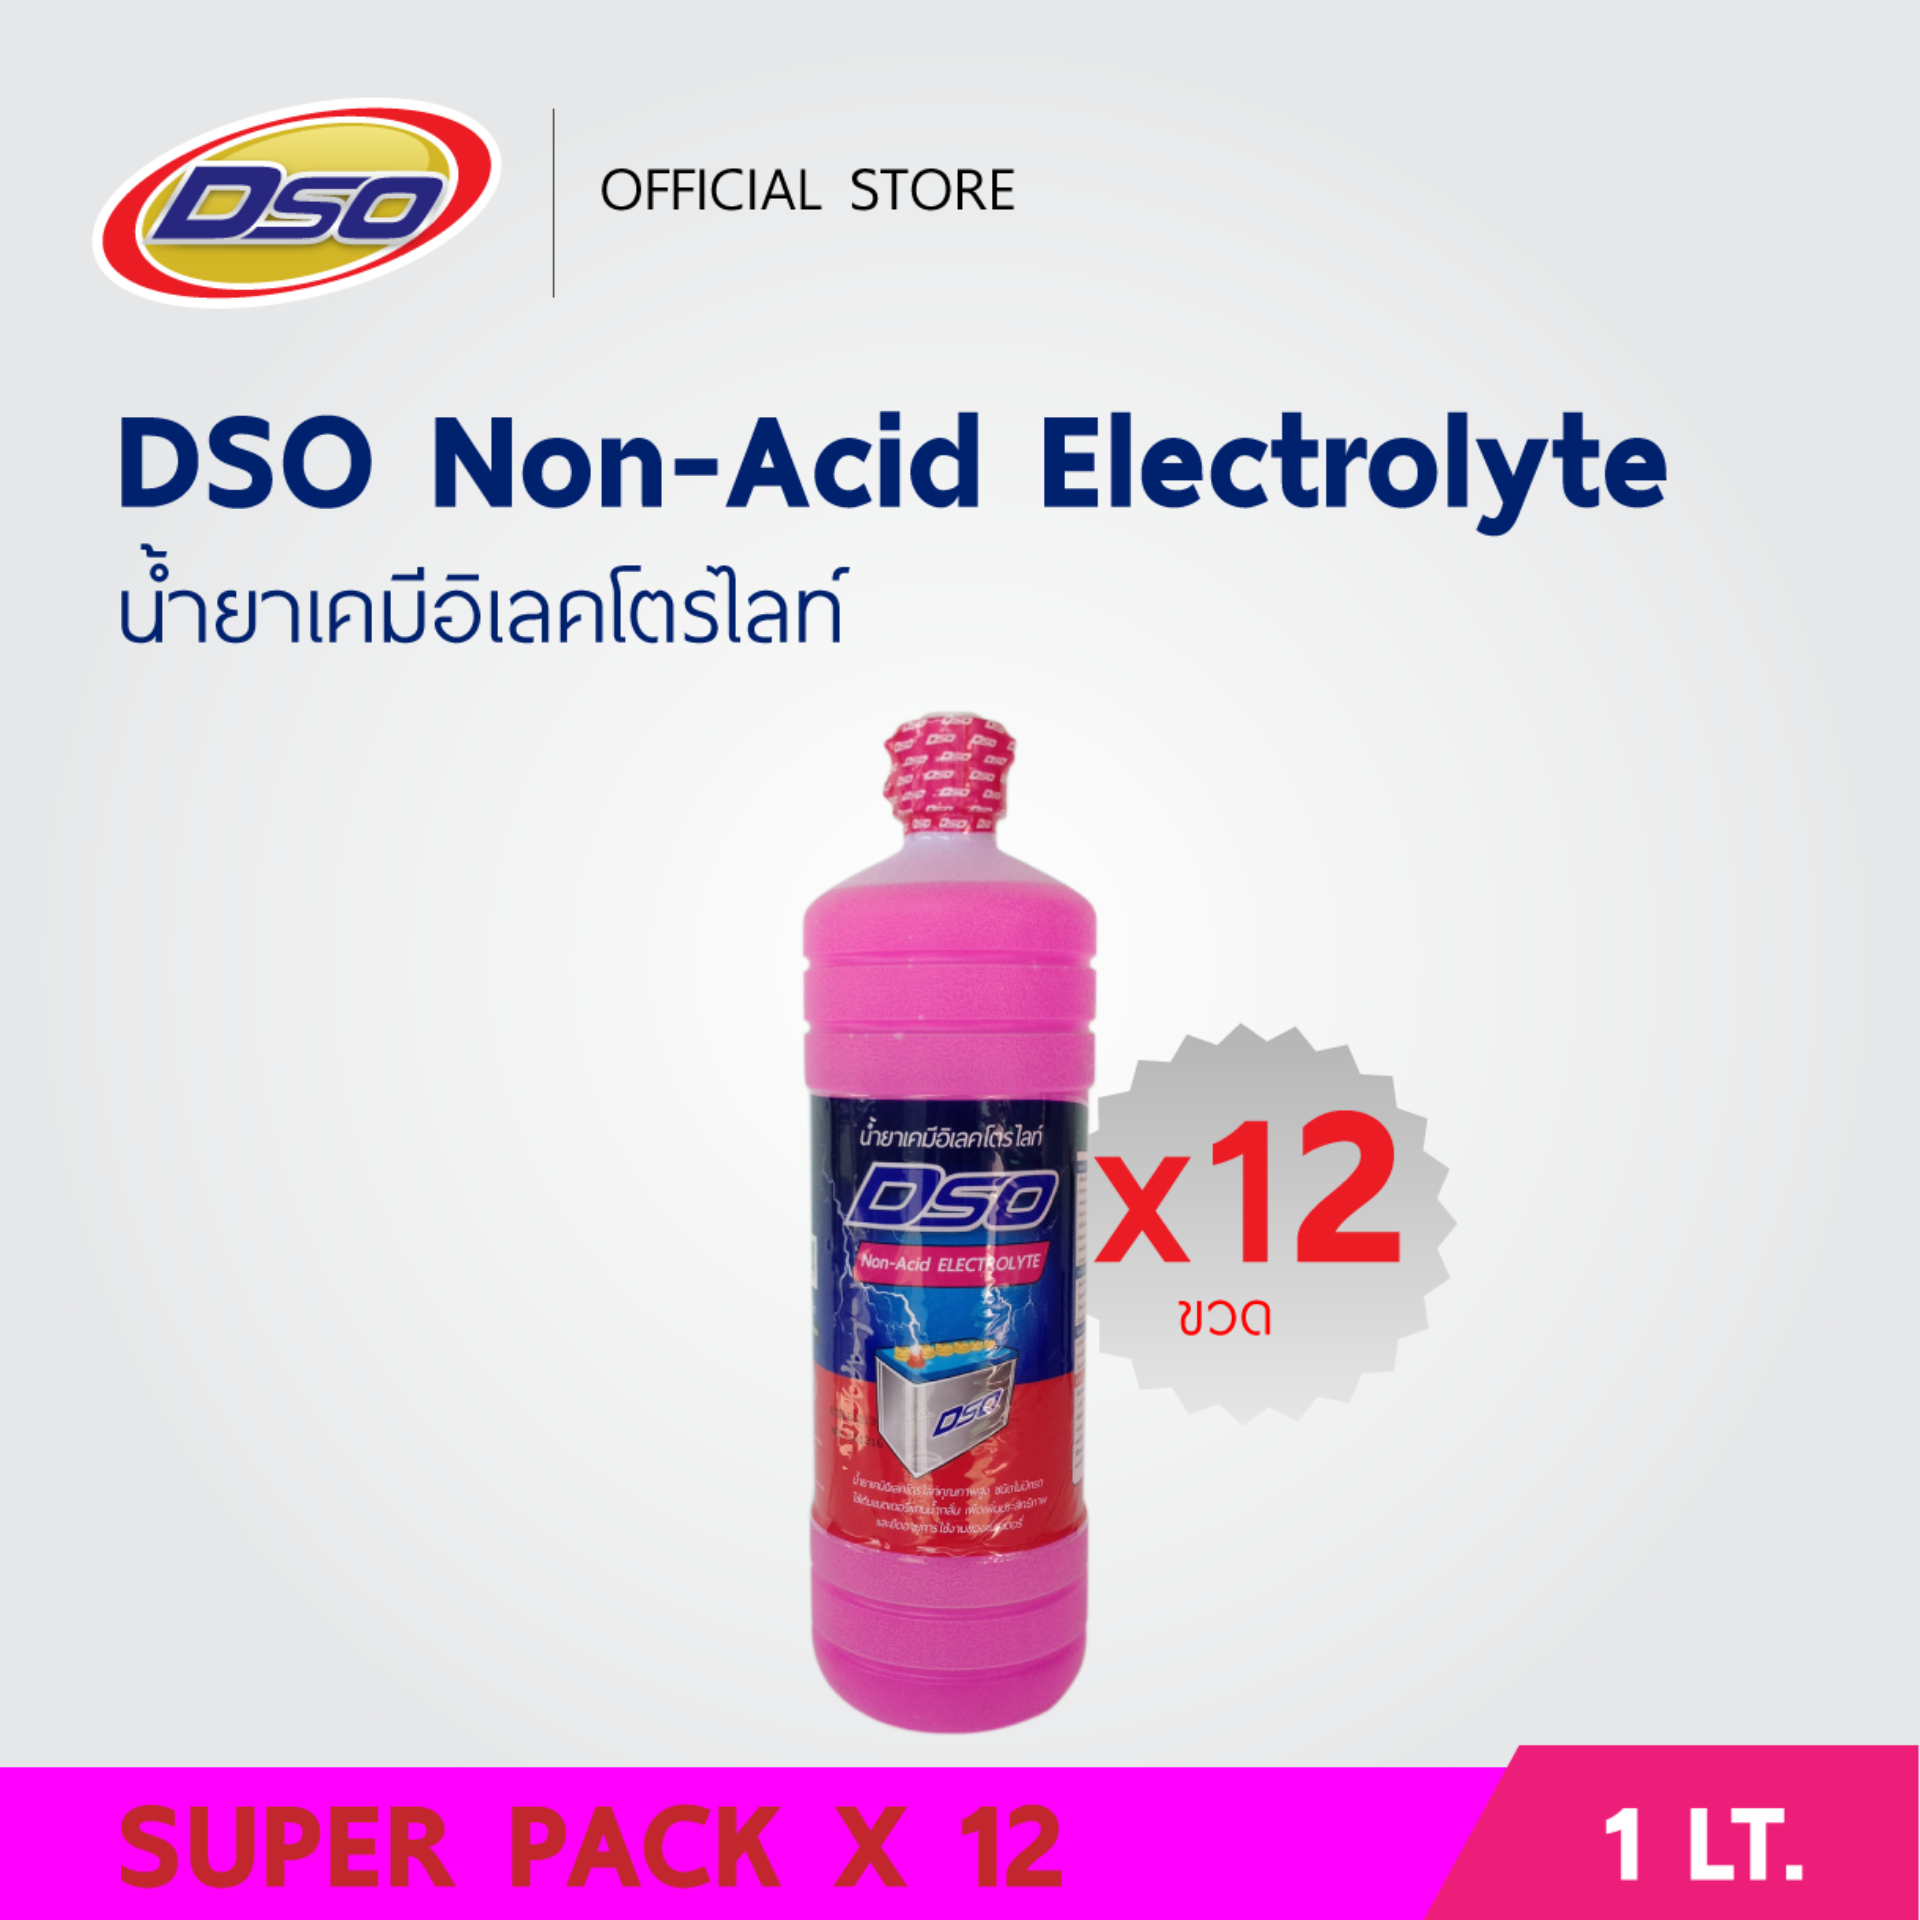 ดีโซ่ น้ำยาเคมีอิเลคโตรไลท์ 1 ลิตร (น้ำกลั่นสีชมพู) / DSO Non-Acid Electrolyte (Battery Fluid) 1LT. (แพ็ค x12 ขวด)